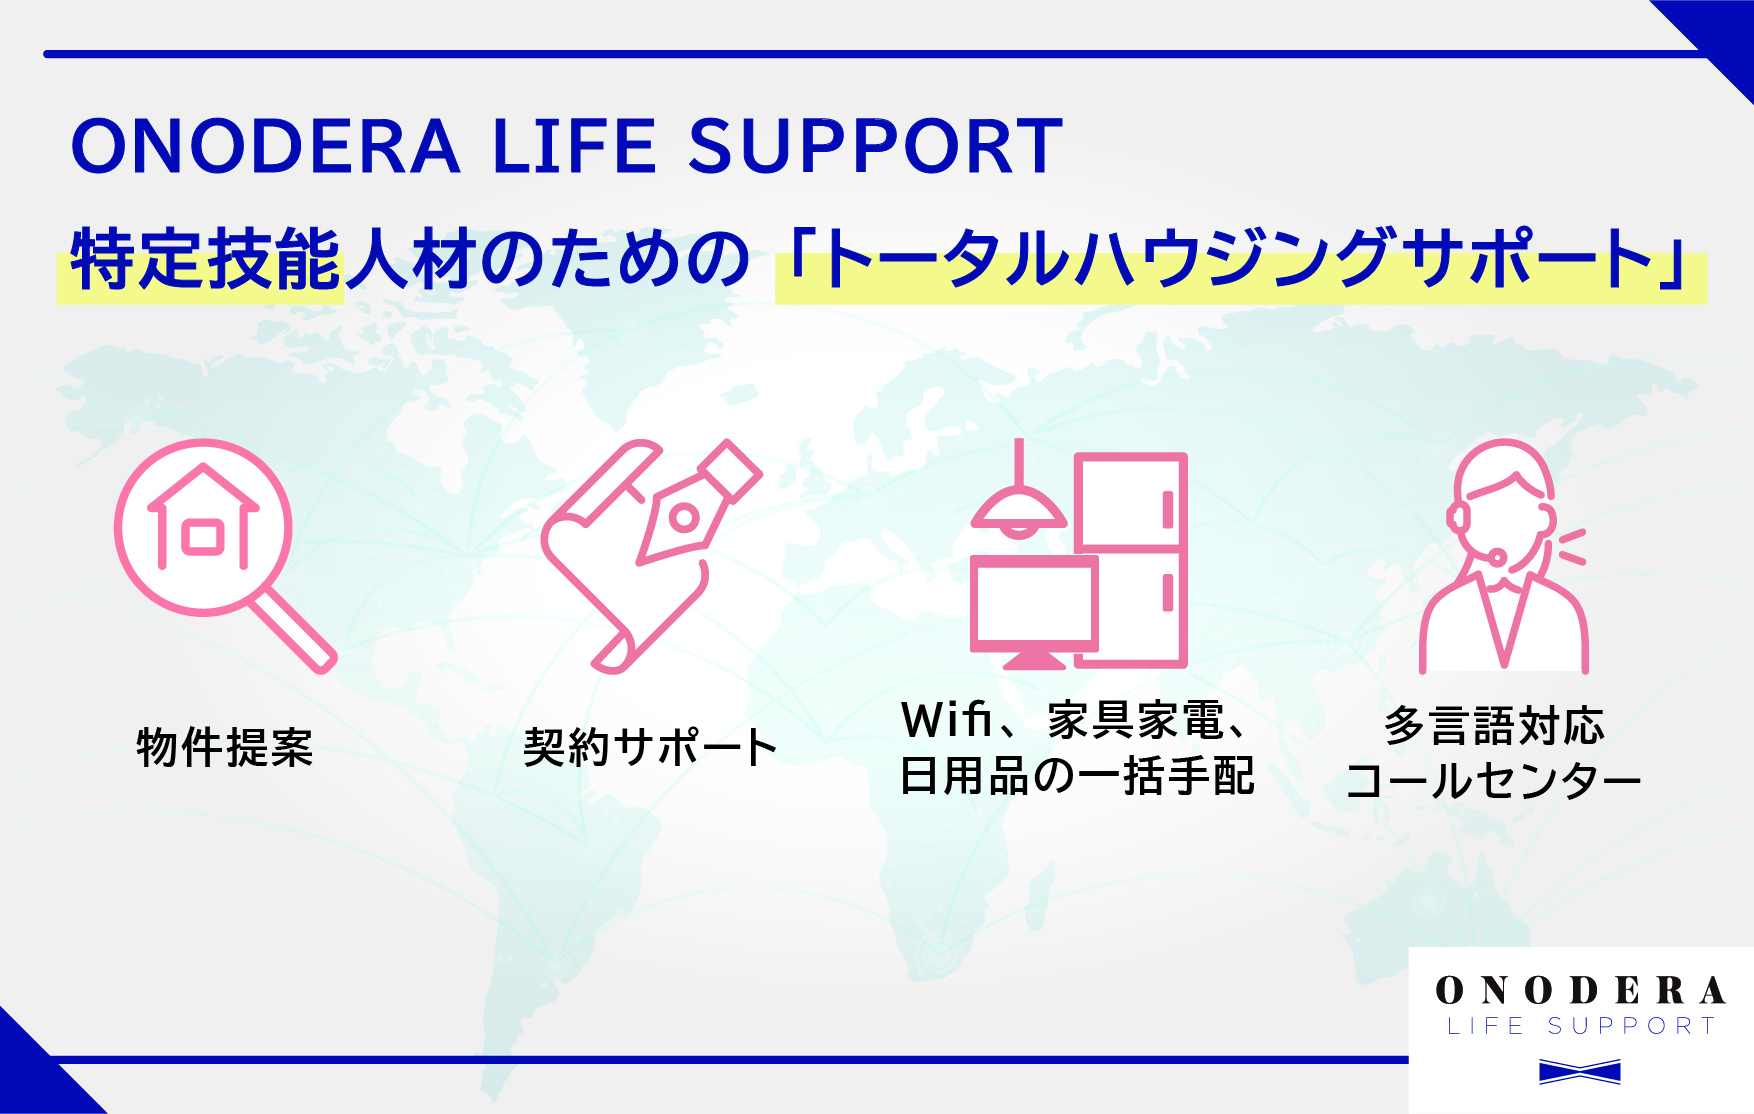 ONODERA LIFE SUPPORT、特定技能人材の住まいを整えるハウジングサポート事業を開始